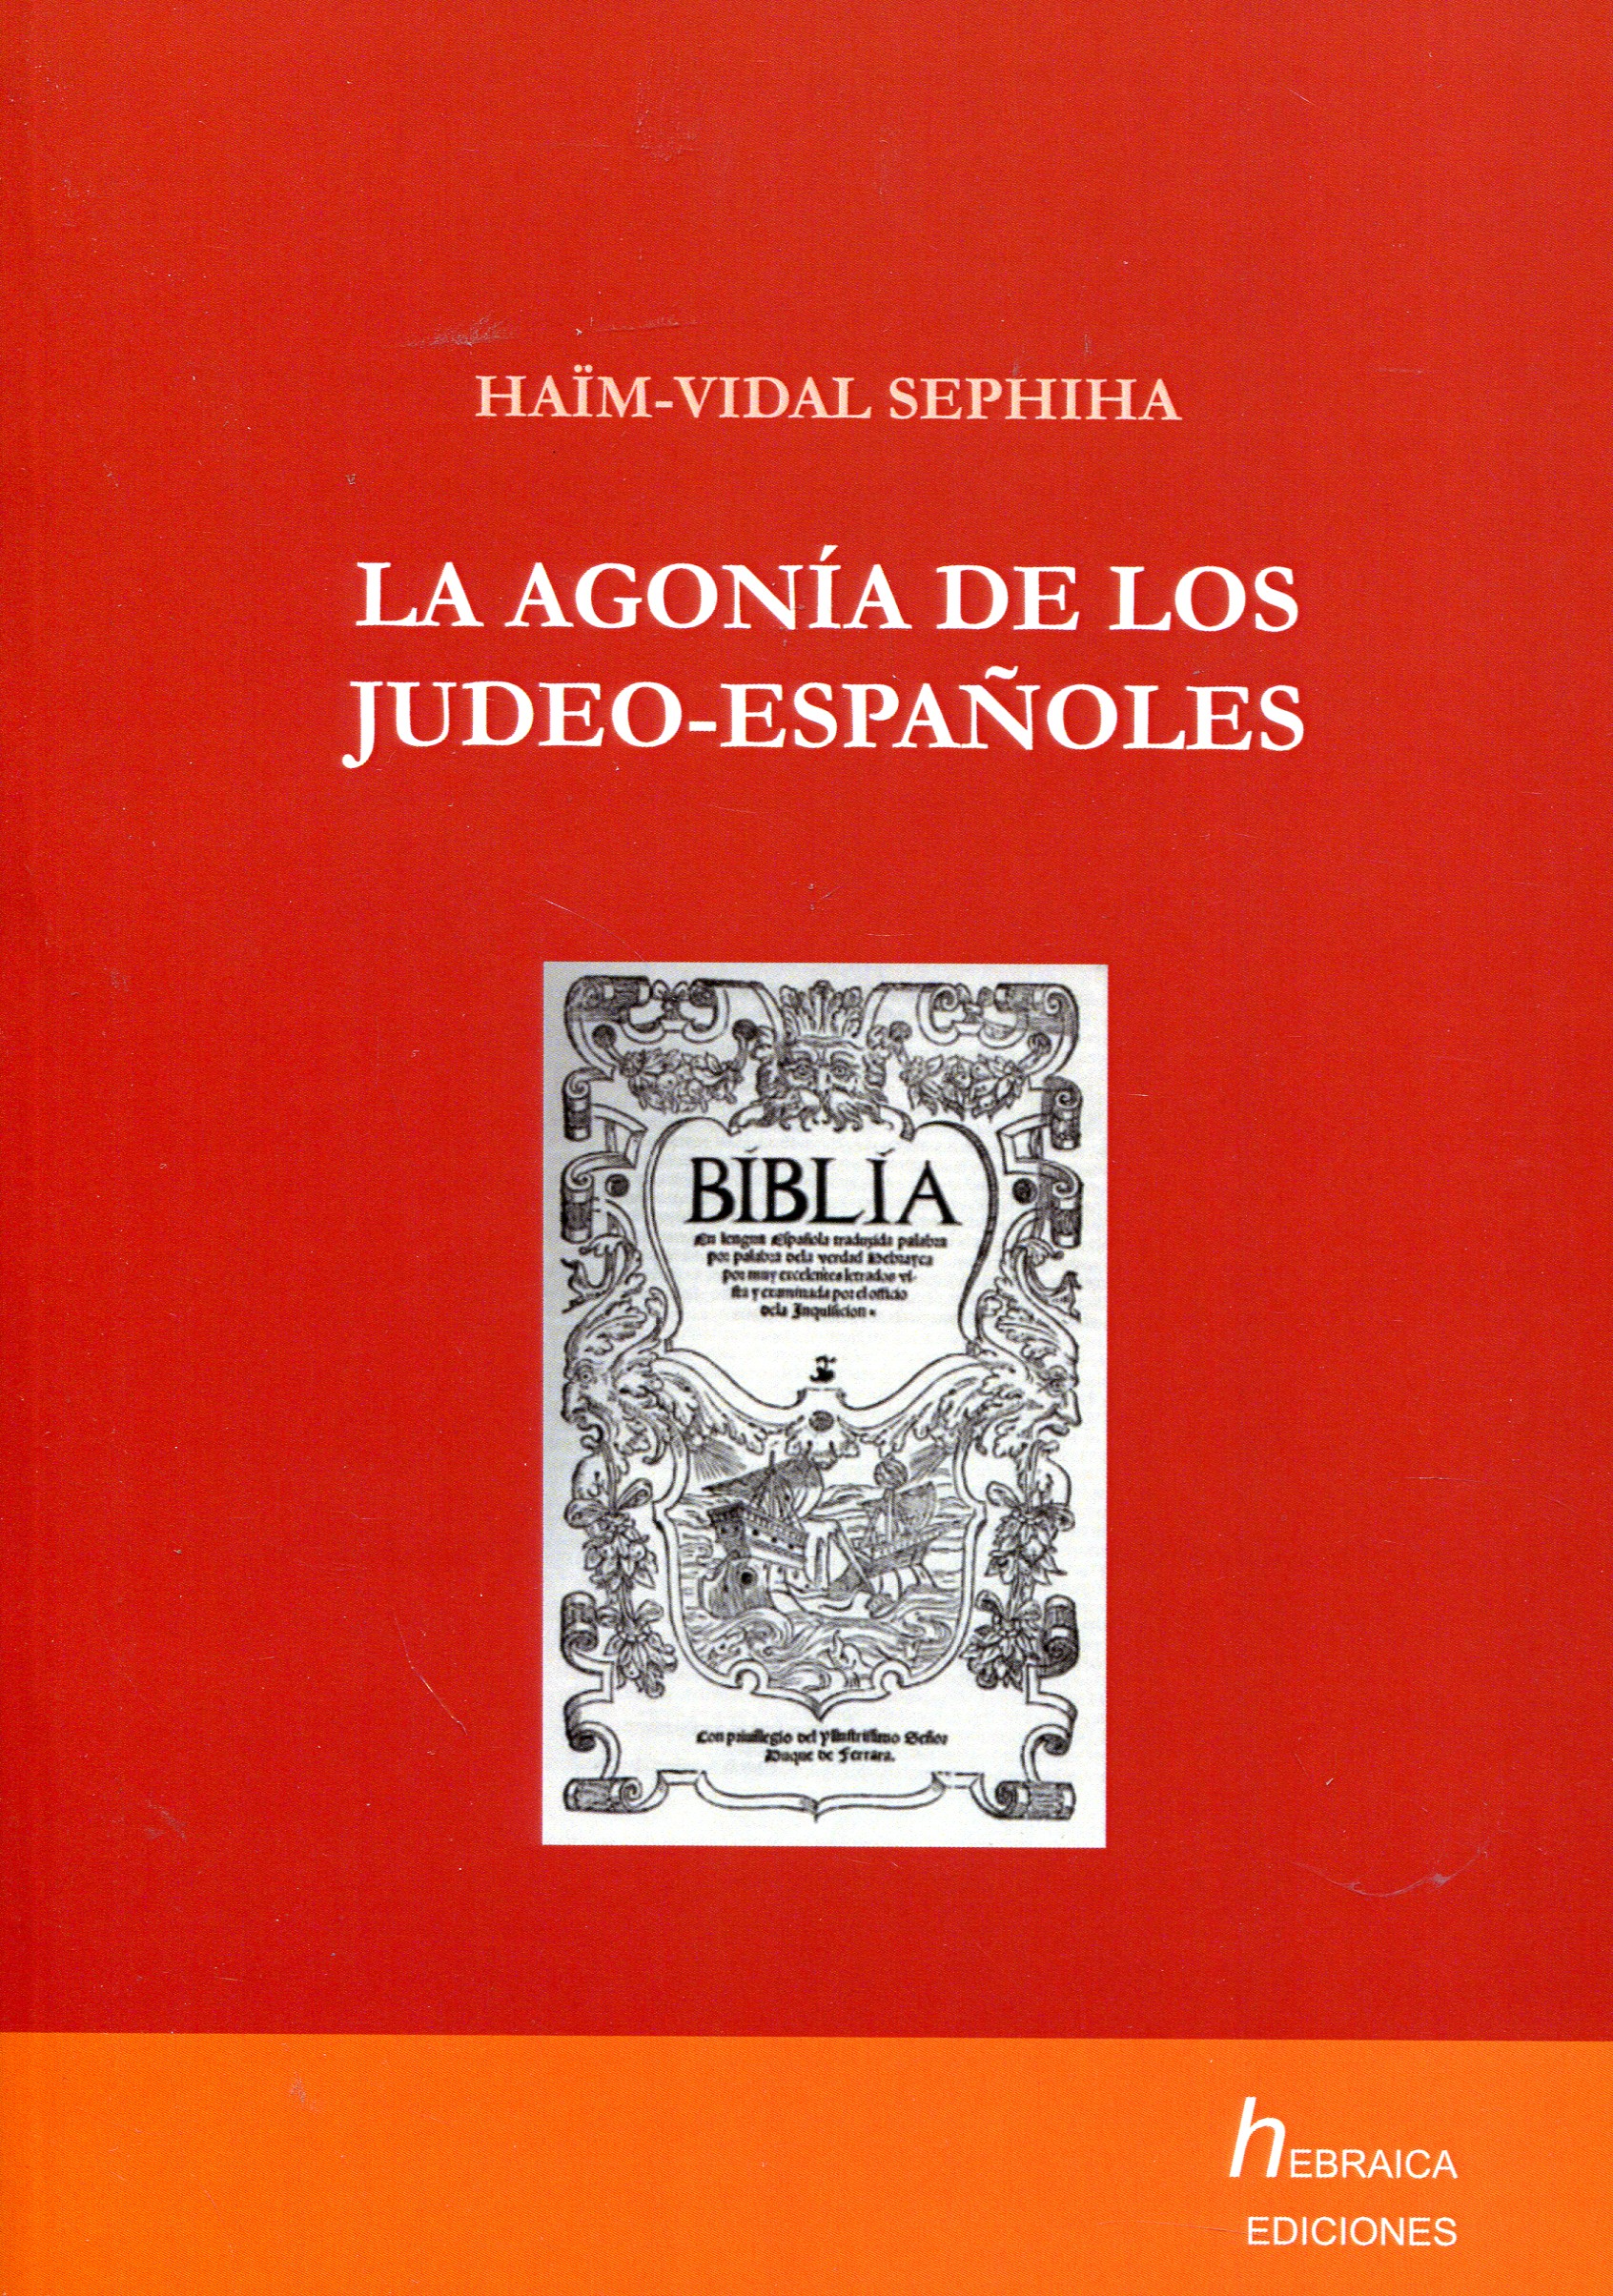 La agonía de los judeo-españoles